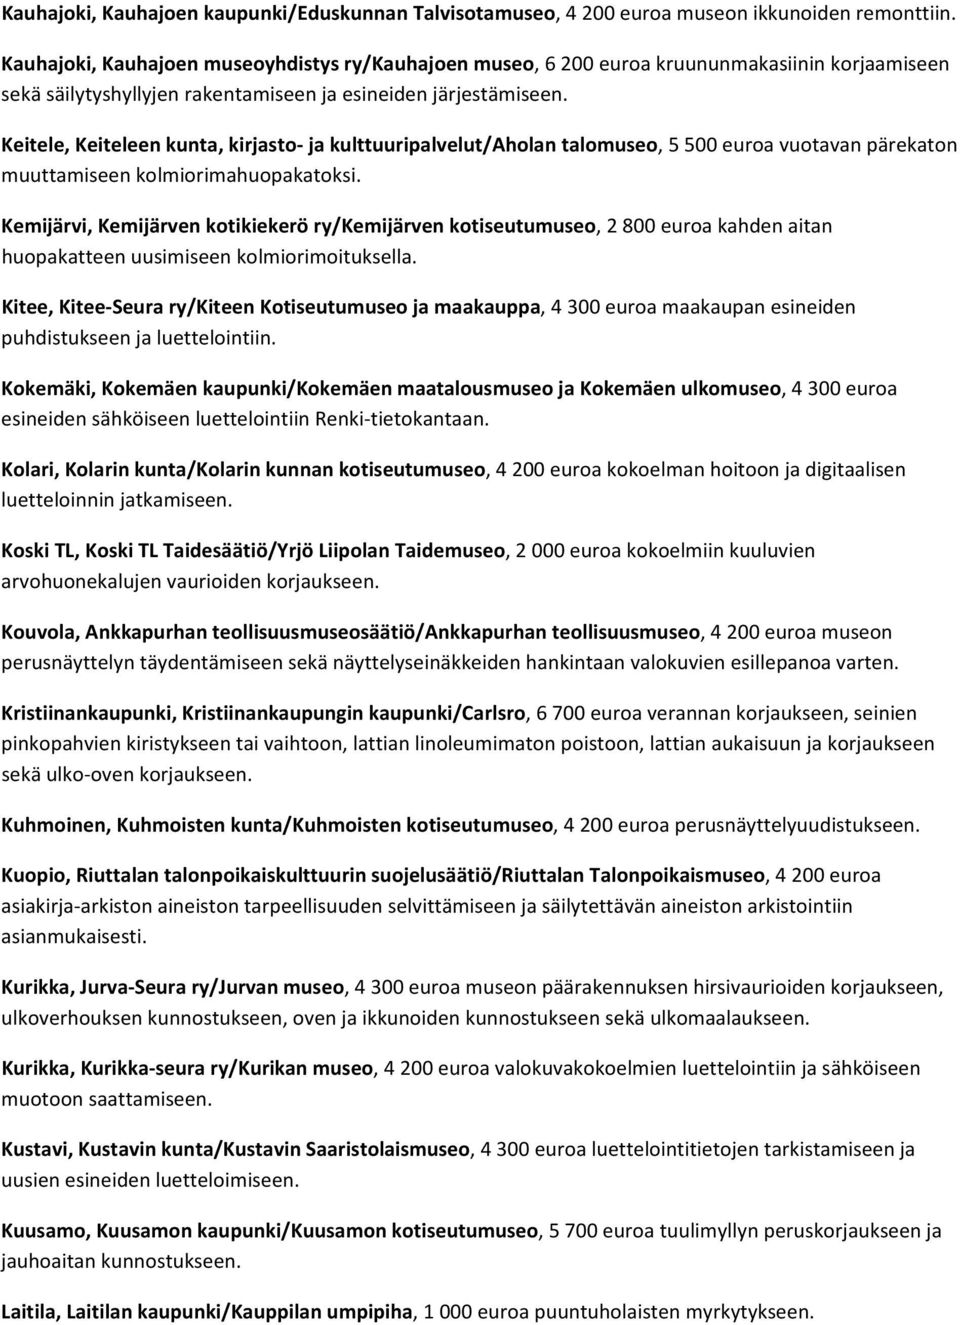 Keitele, Keiteleen kunta, kirjasto ja kulttuuripalvelut/aholan talomuseo, 5 500 euroa vuotavan pärekaton muuttamiseen kolmiorimahuopakatoksi.